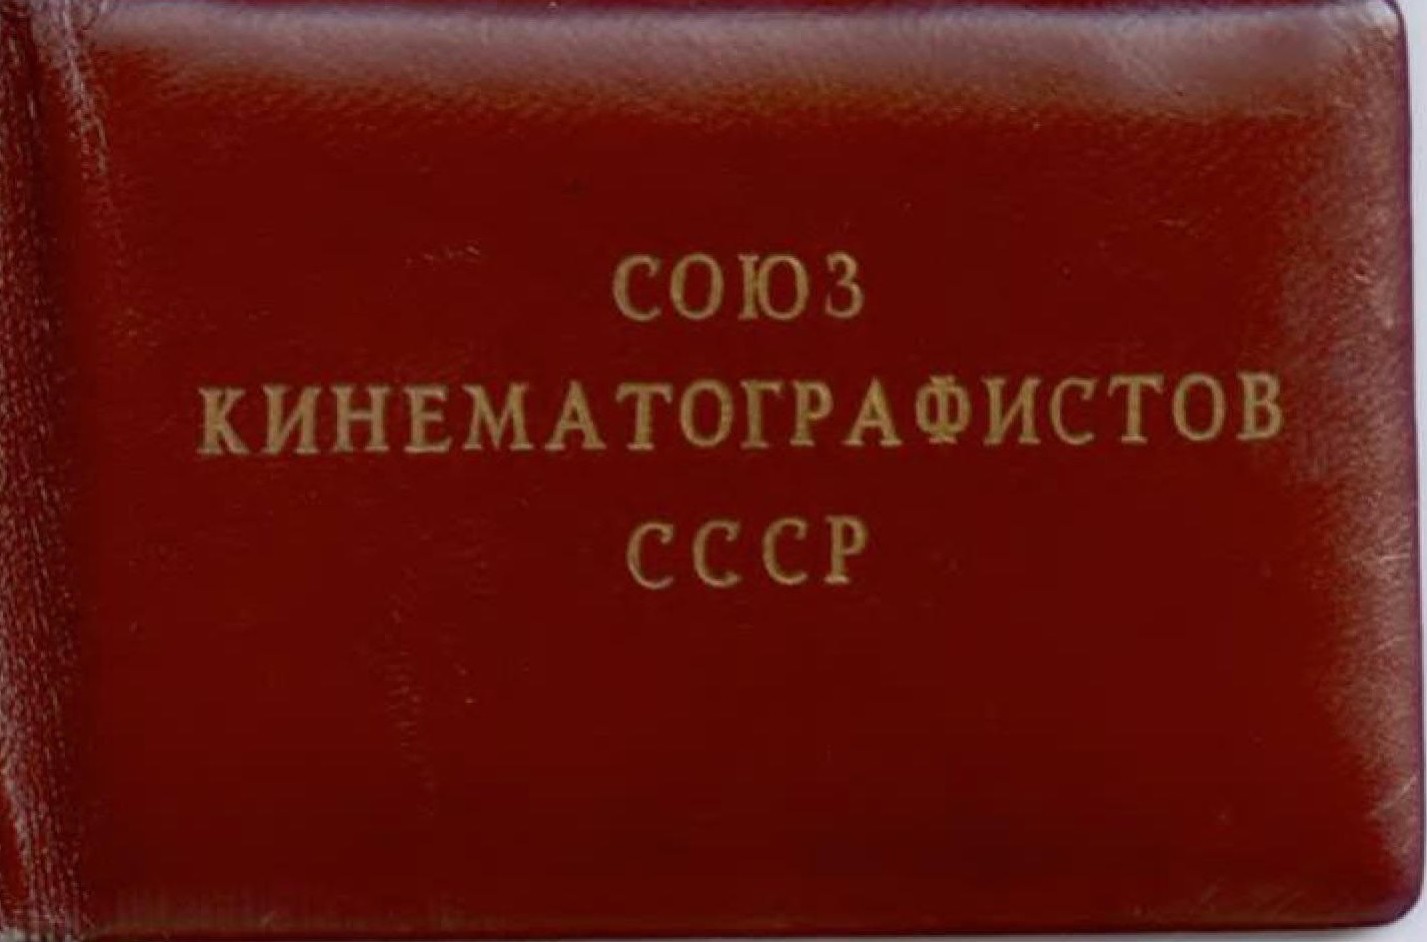 Экспонат #63. Членский билет Союза кинематографистов СССР. 1958 год